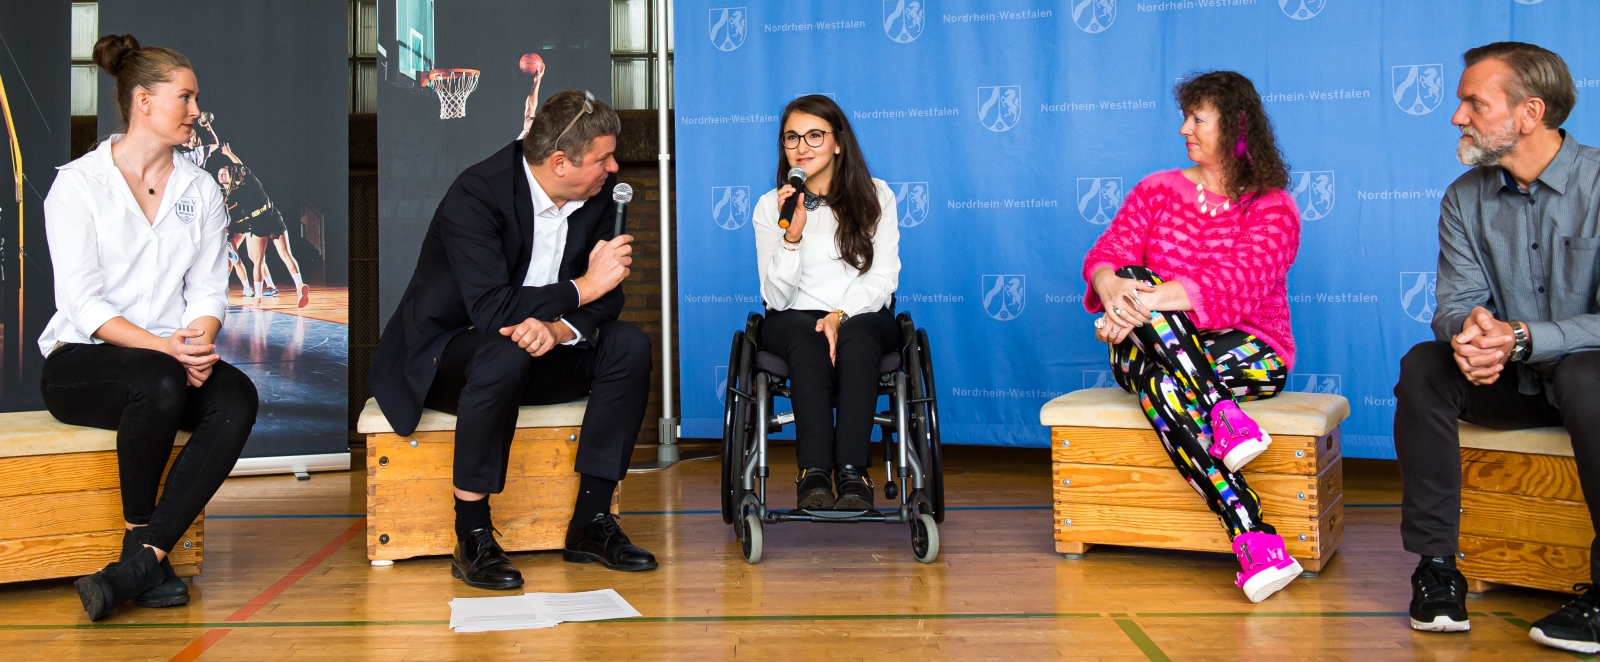 Staatssekretärin Milz sitzt mit vier Personen in eienr Sporthalle. Ein Herr spricht gerade mit einer Sportlerin im Rollstuhl, beide halten ein Mikrofon in einer Hand.